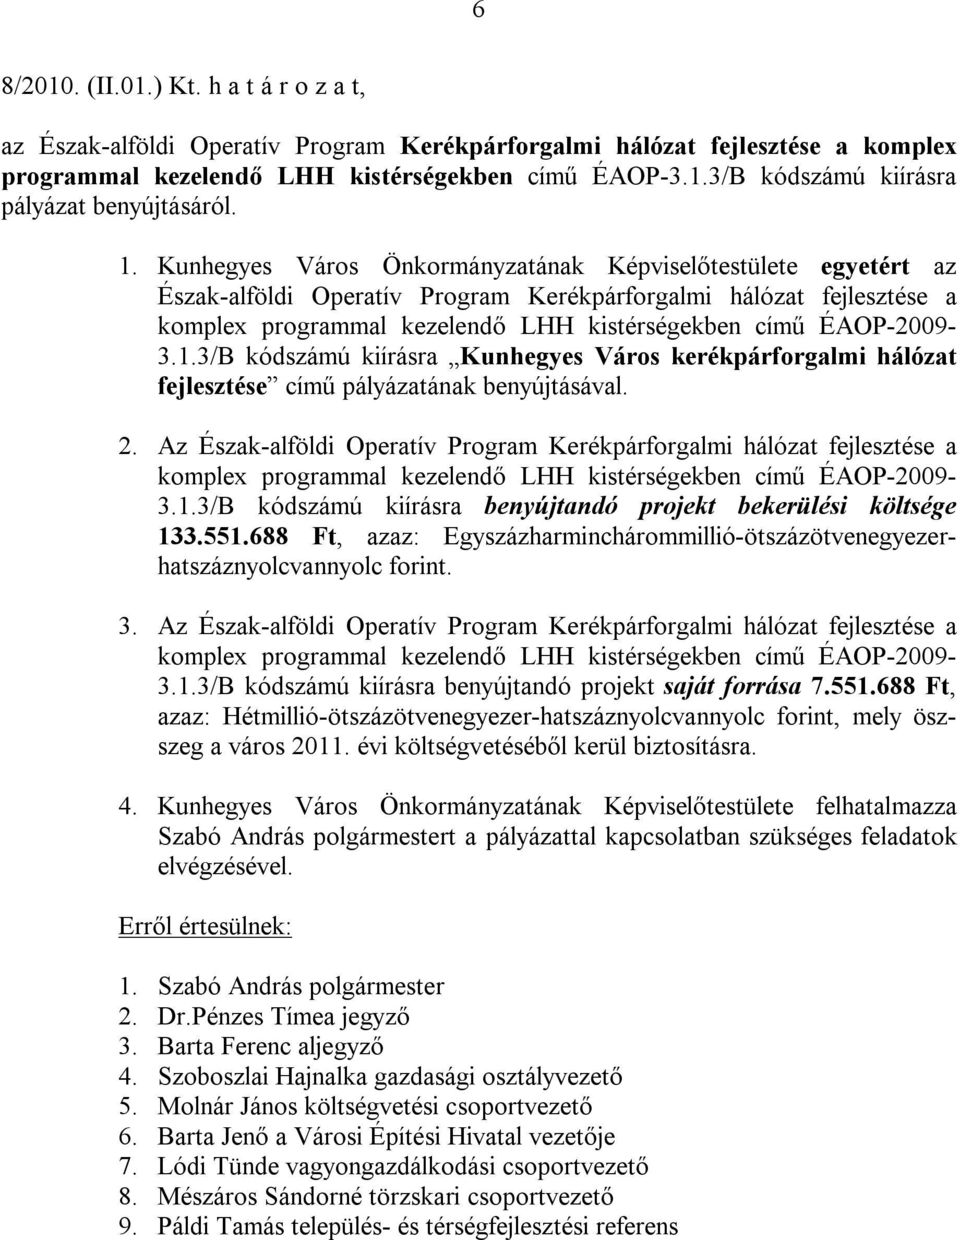 ÉAOP-2009-3.1.3/B kódszámú kiírásra Kunhegyes Város kerékpárforgalmi hálózat fejlesztése című pályázatának benyújtásával. 2.